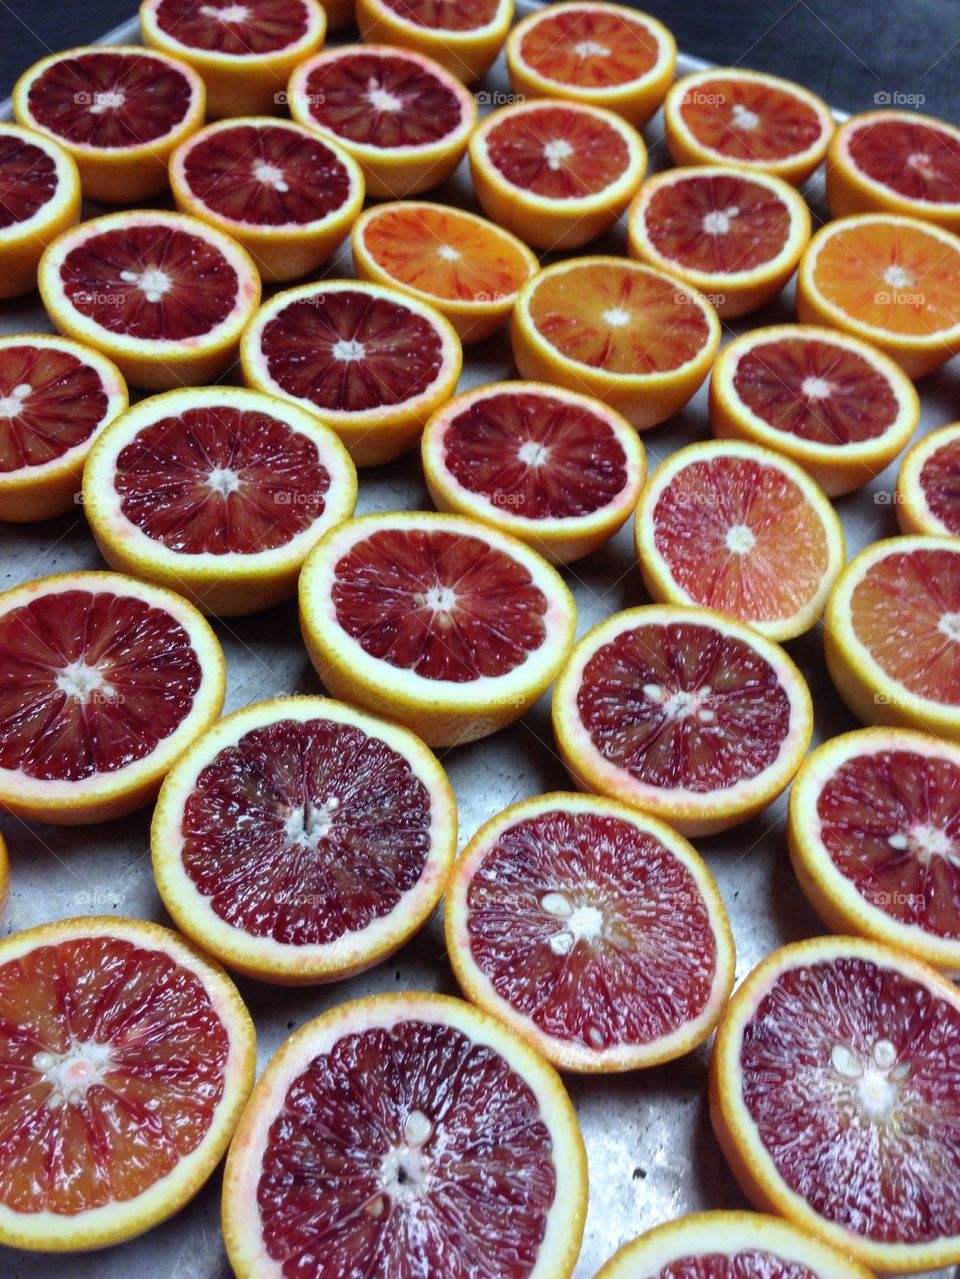 Bleeding Orange